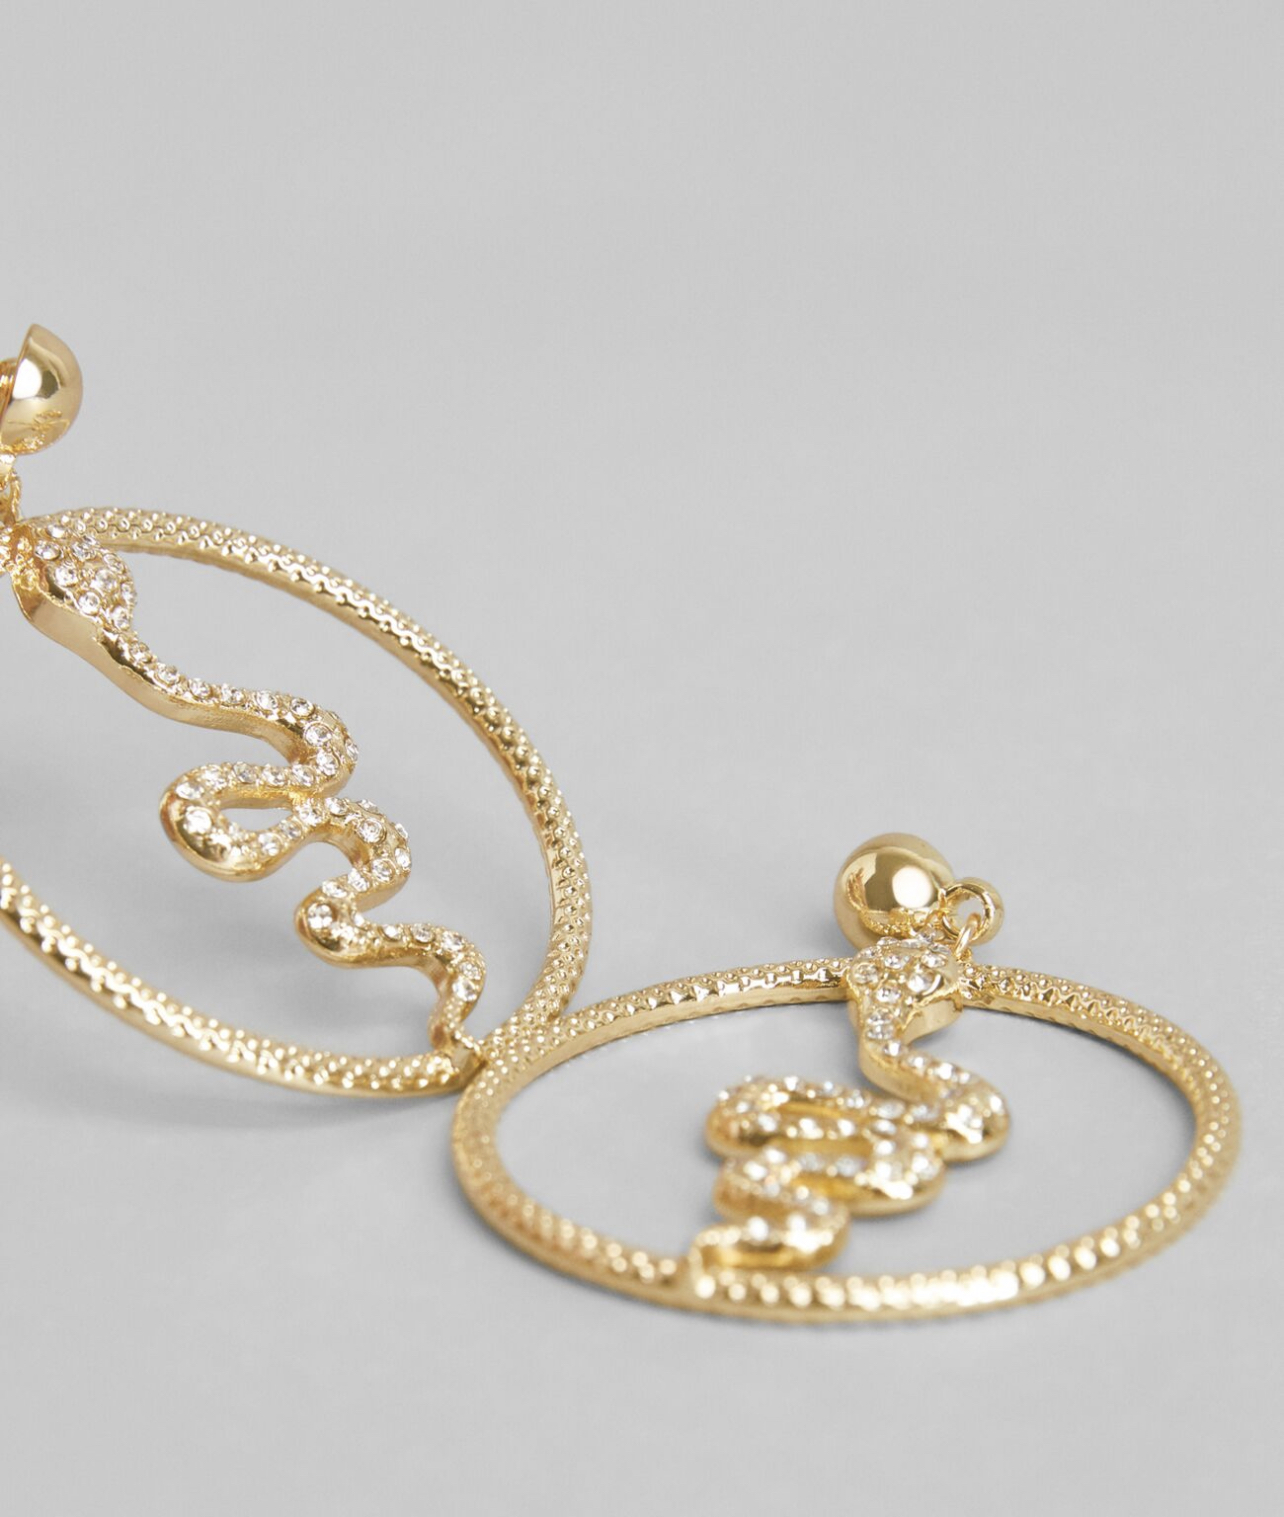 Statement earrings: Τα κοσμήματα που ορίζουν το στυλ σου